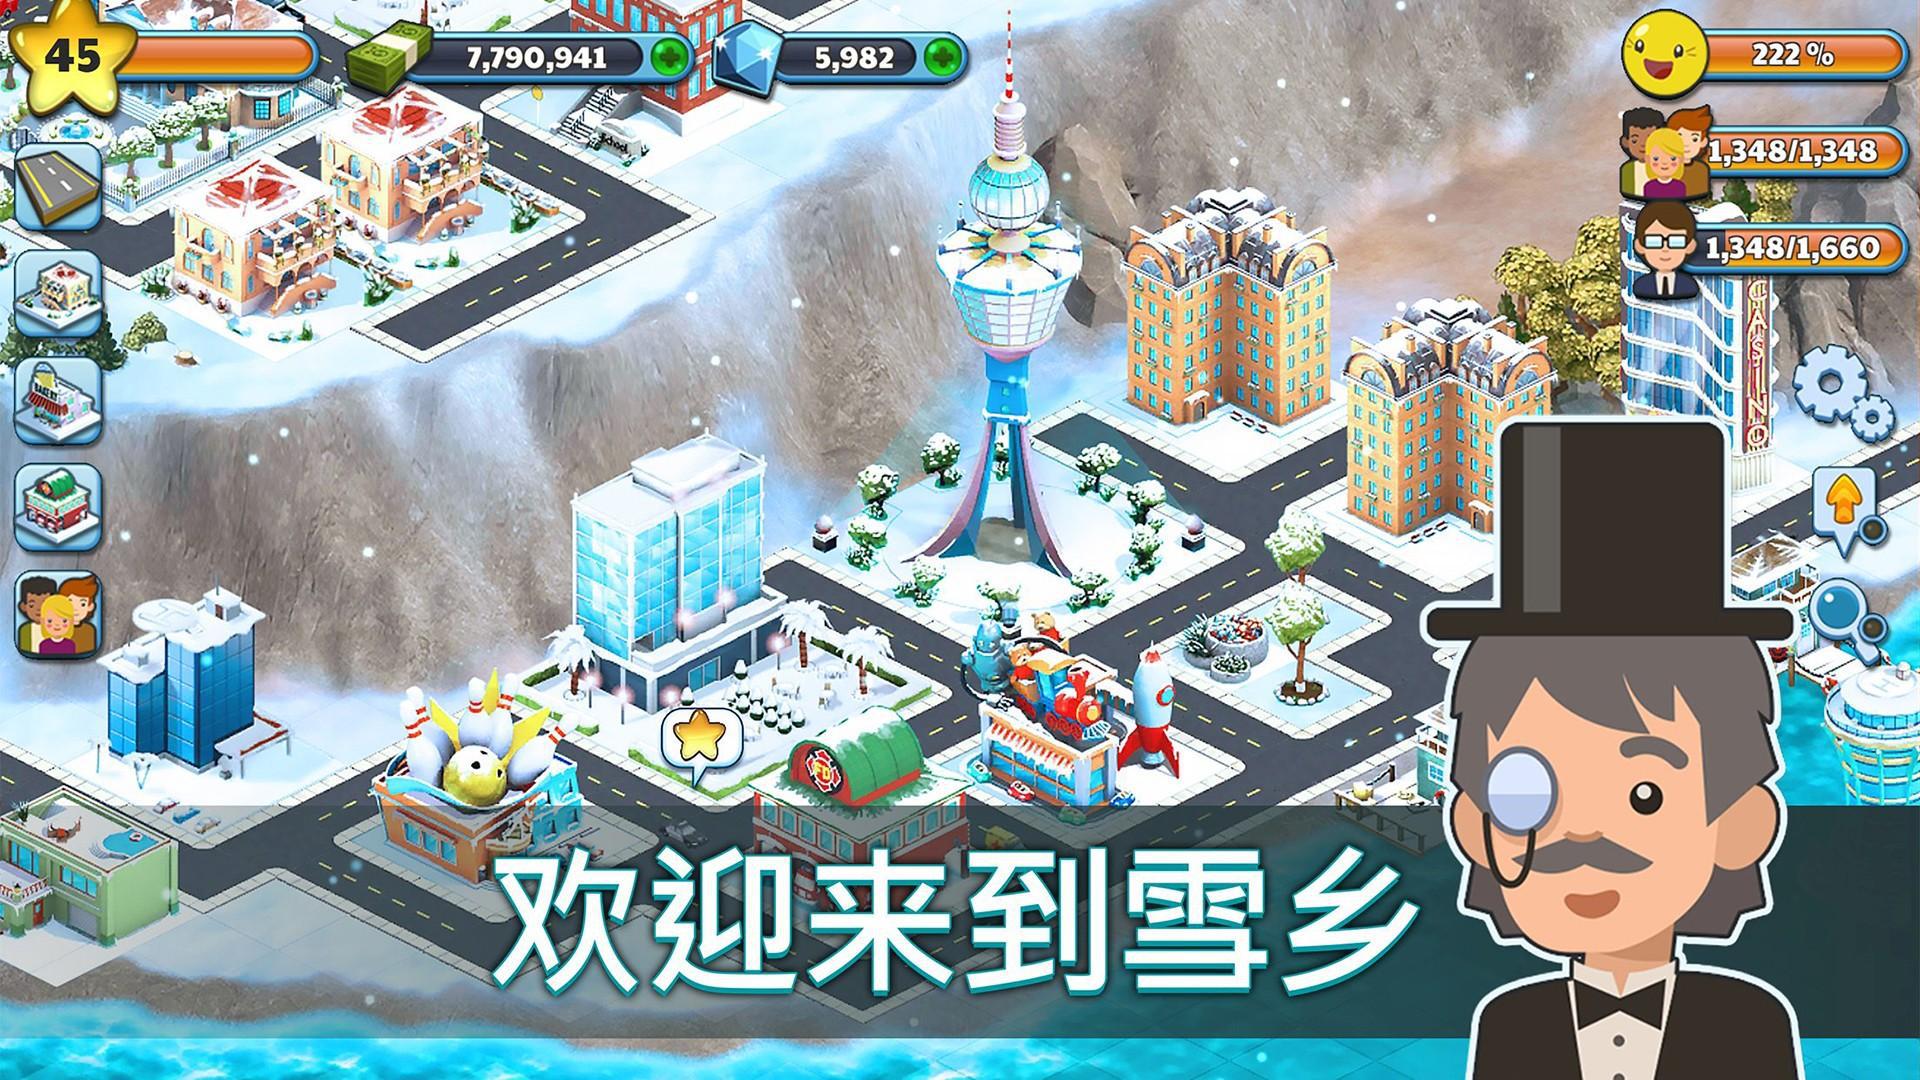 雪城-冰雪村庄世界 Snow Town Ice Village_游戏简介_图2